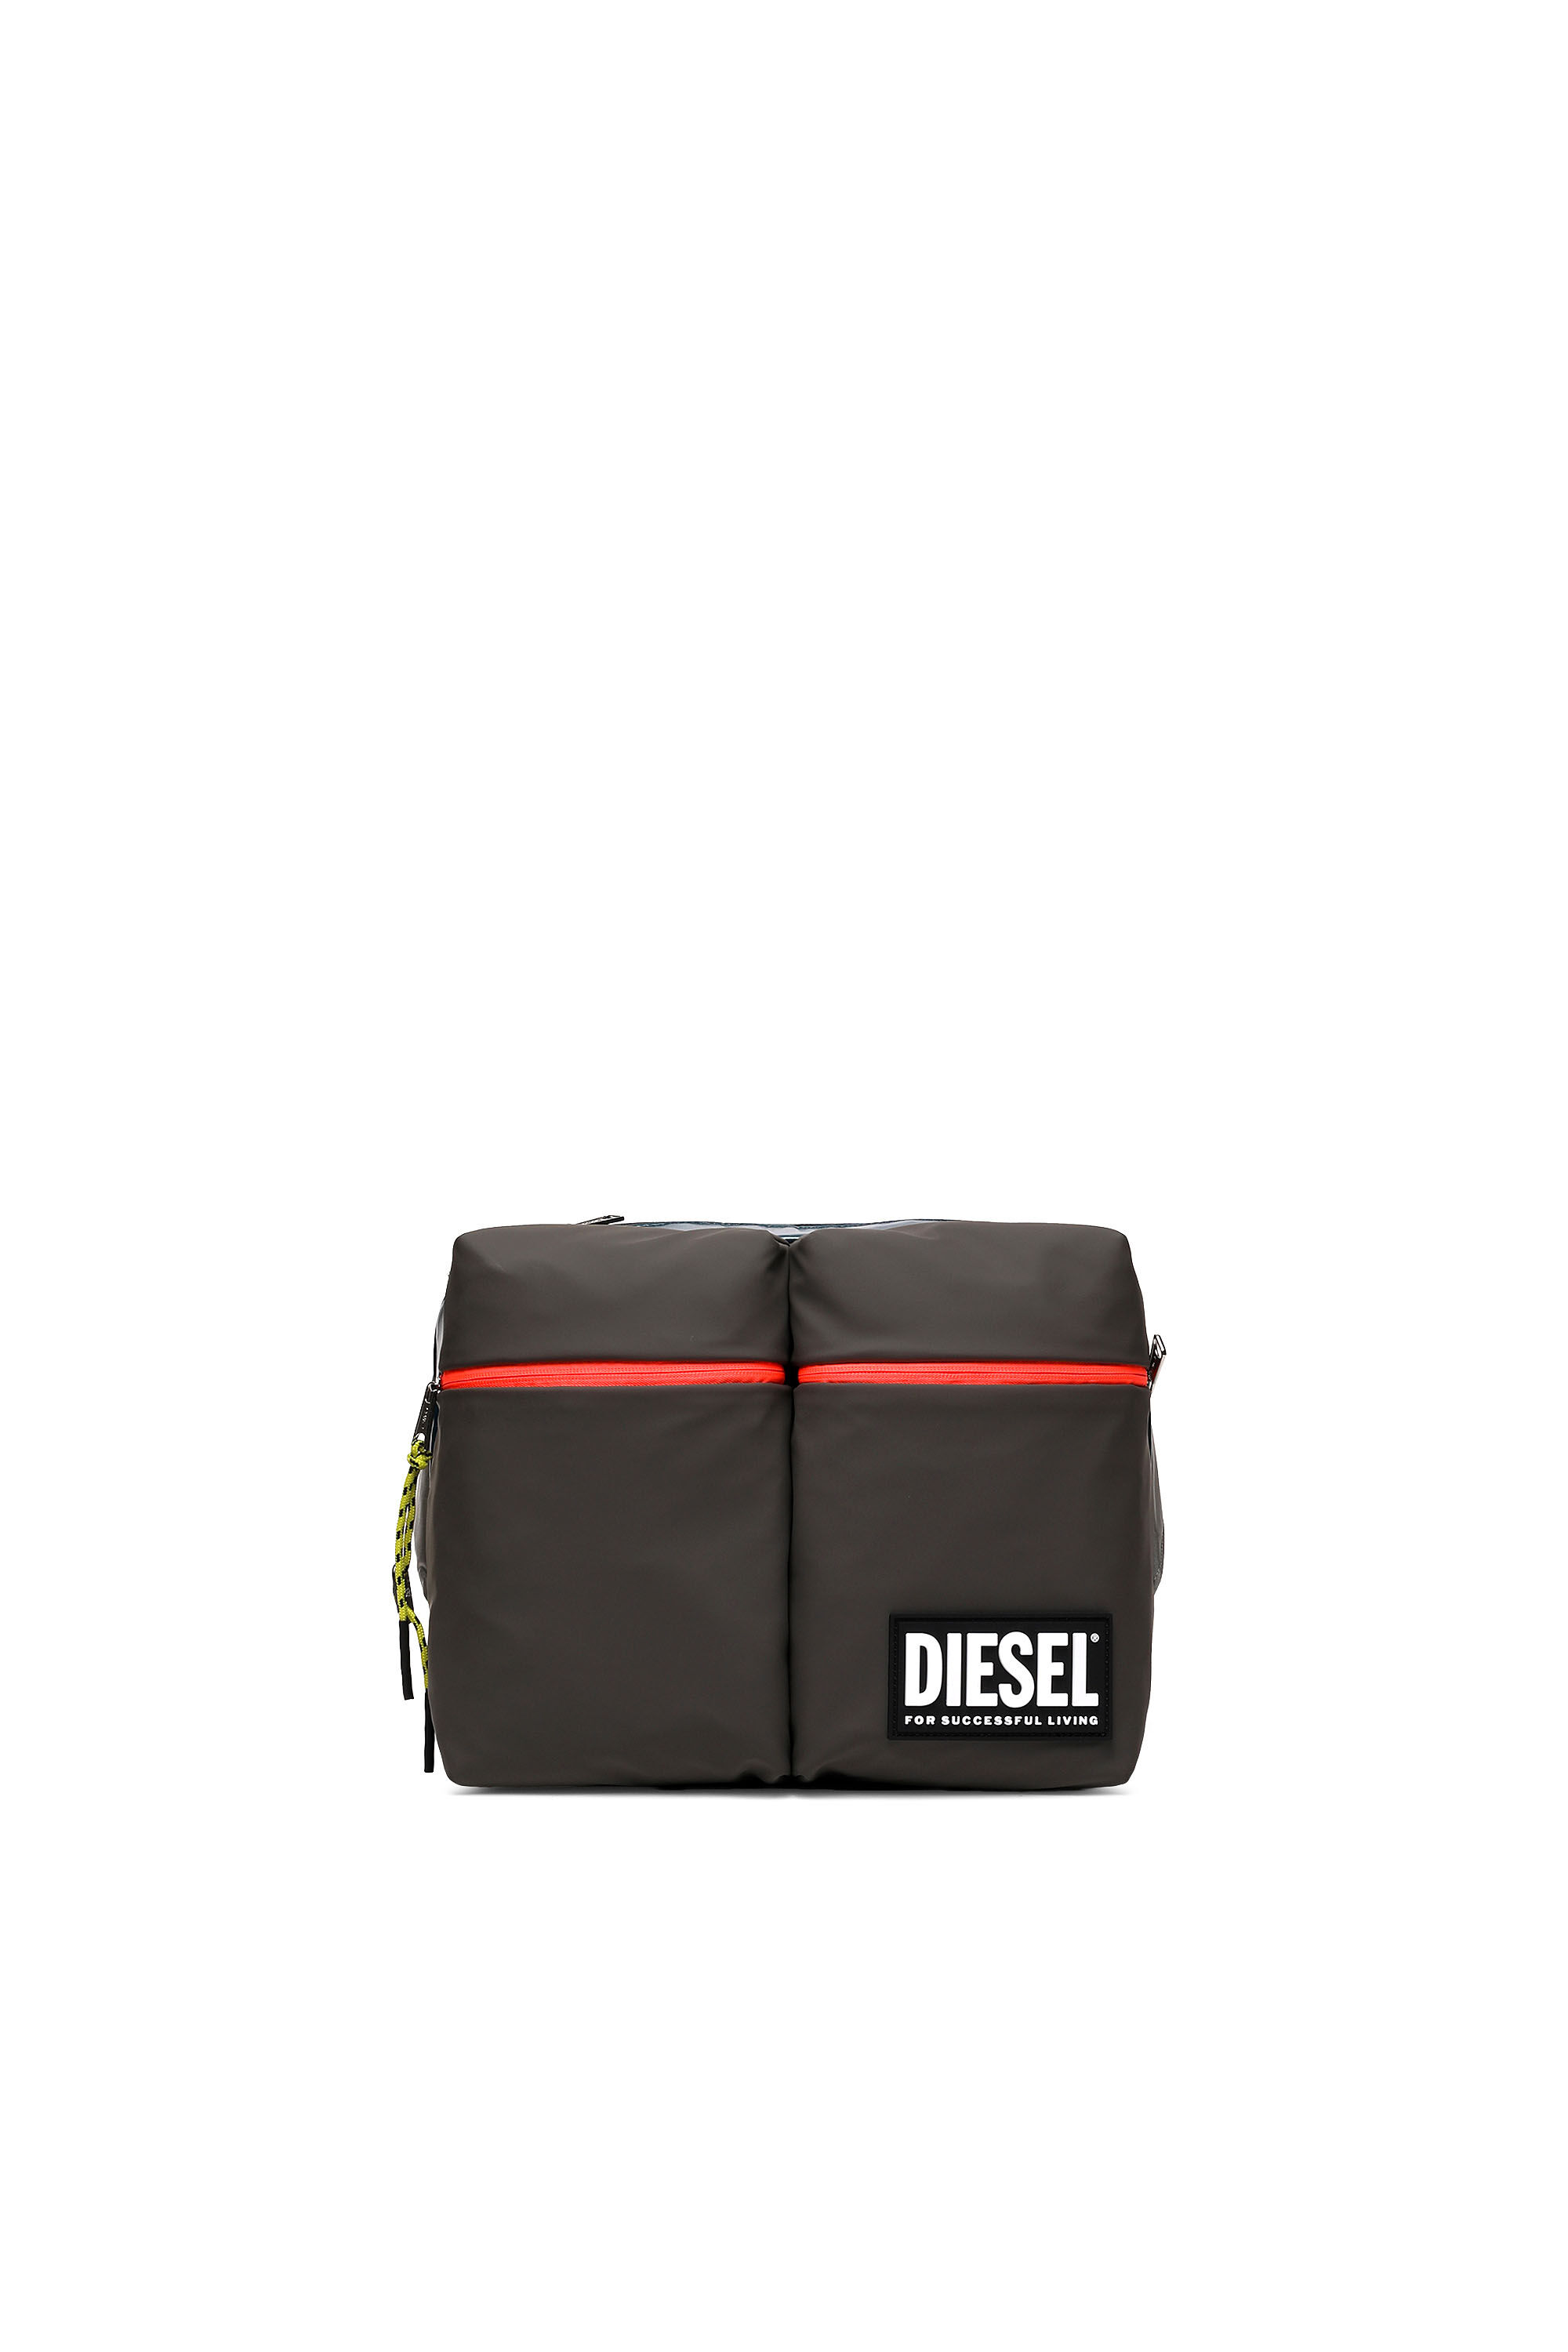 Diesel - CROSYO, Multicolor/Negro - Image 2